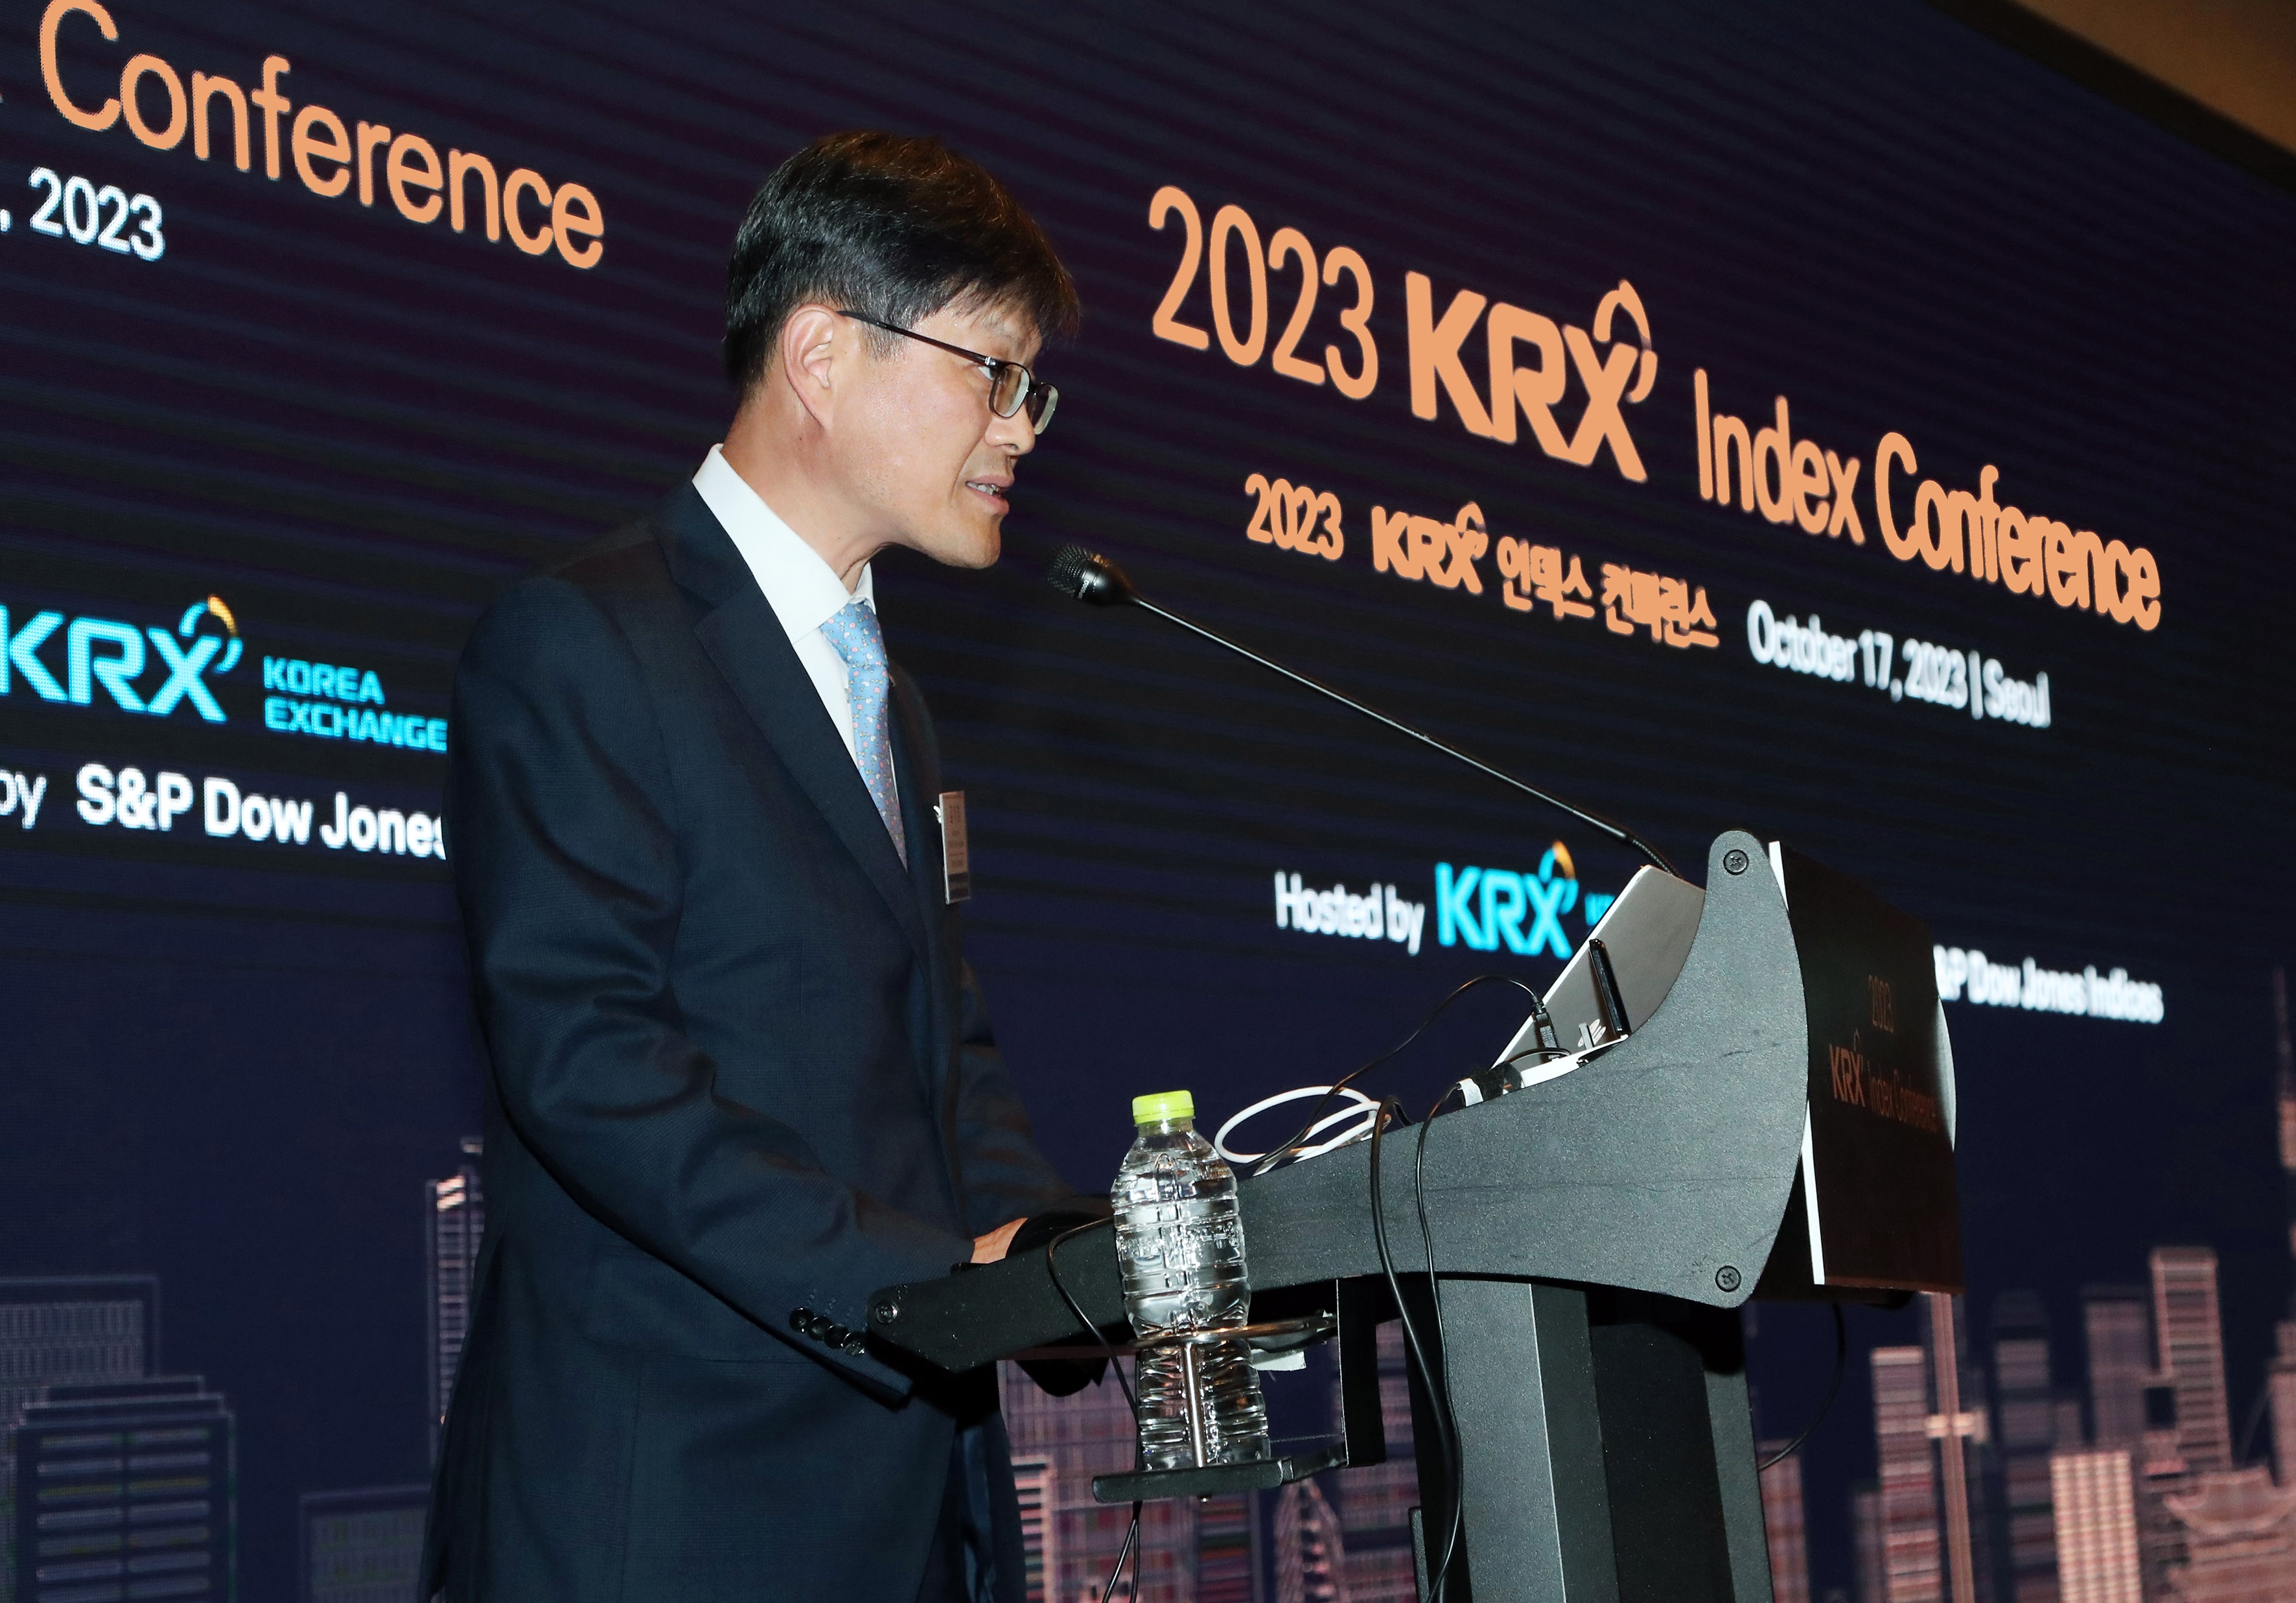 김기경 한국거래소 부이사장(경영지원본부장)이 17일 여의도 콘래드호텔에서 개최된 ‘2023 KRX 인덱스 컨퍼런스’에서 개회사를 하고 있다. /사진제공 = 한국거래소